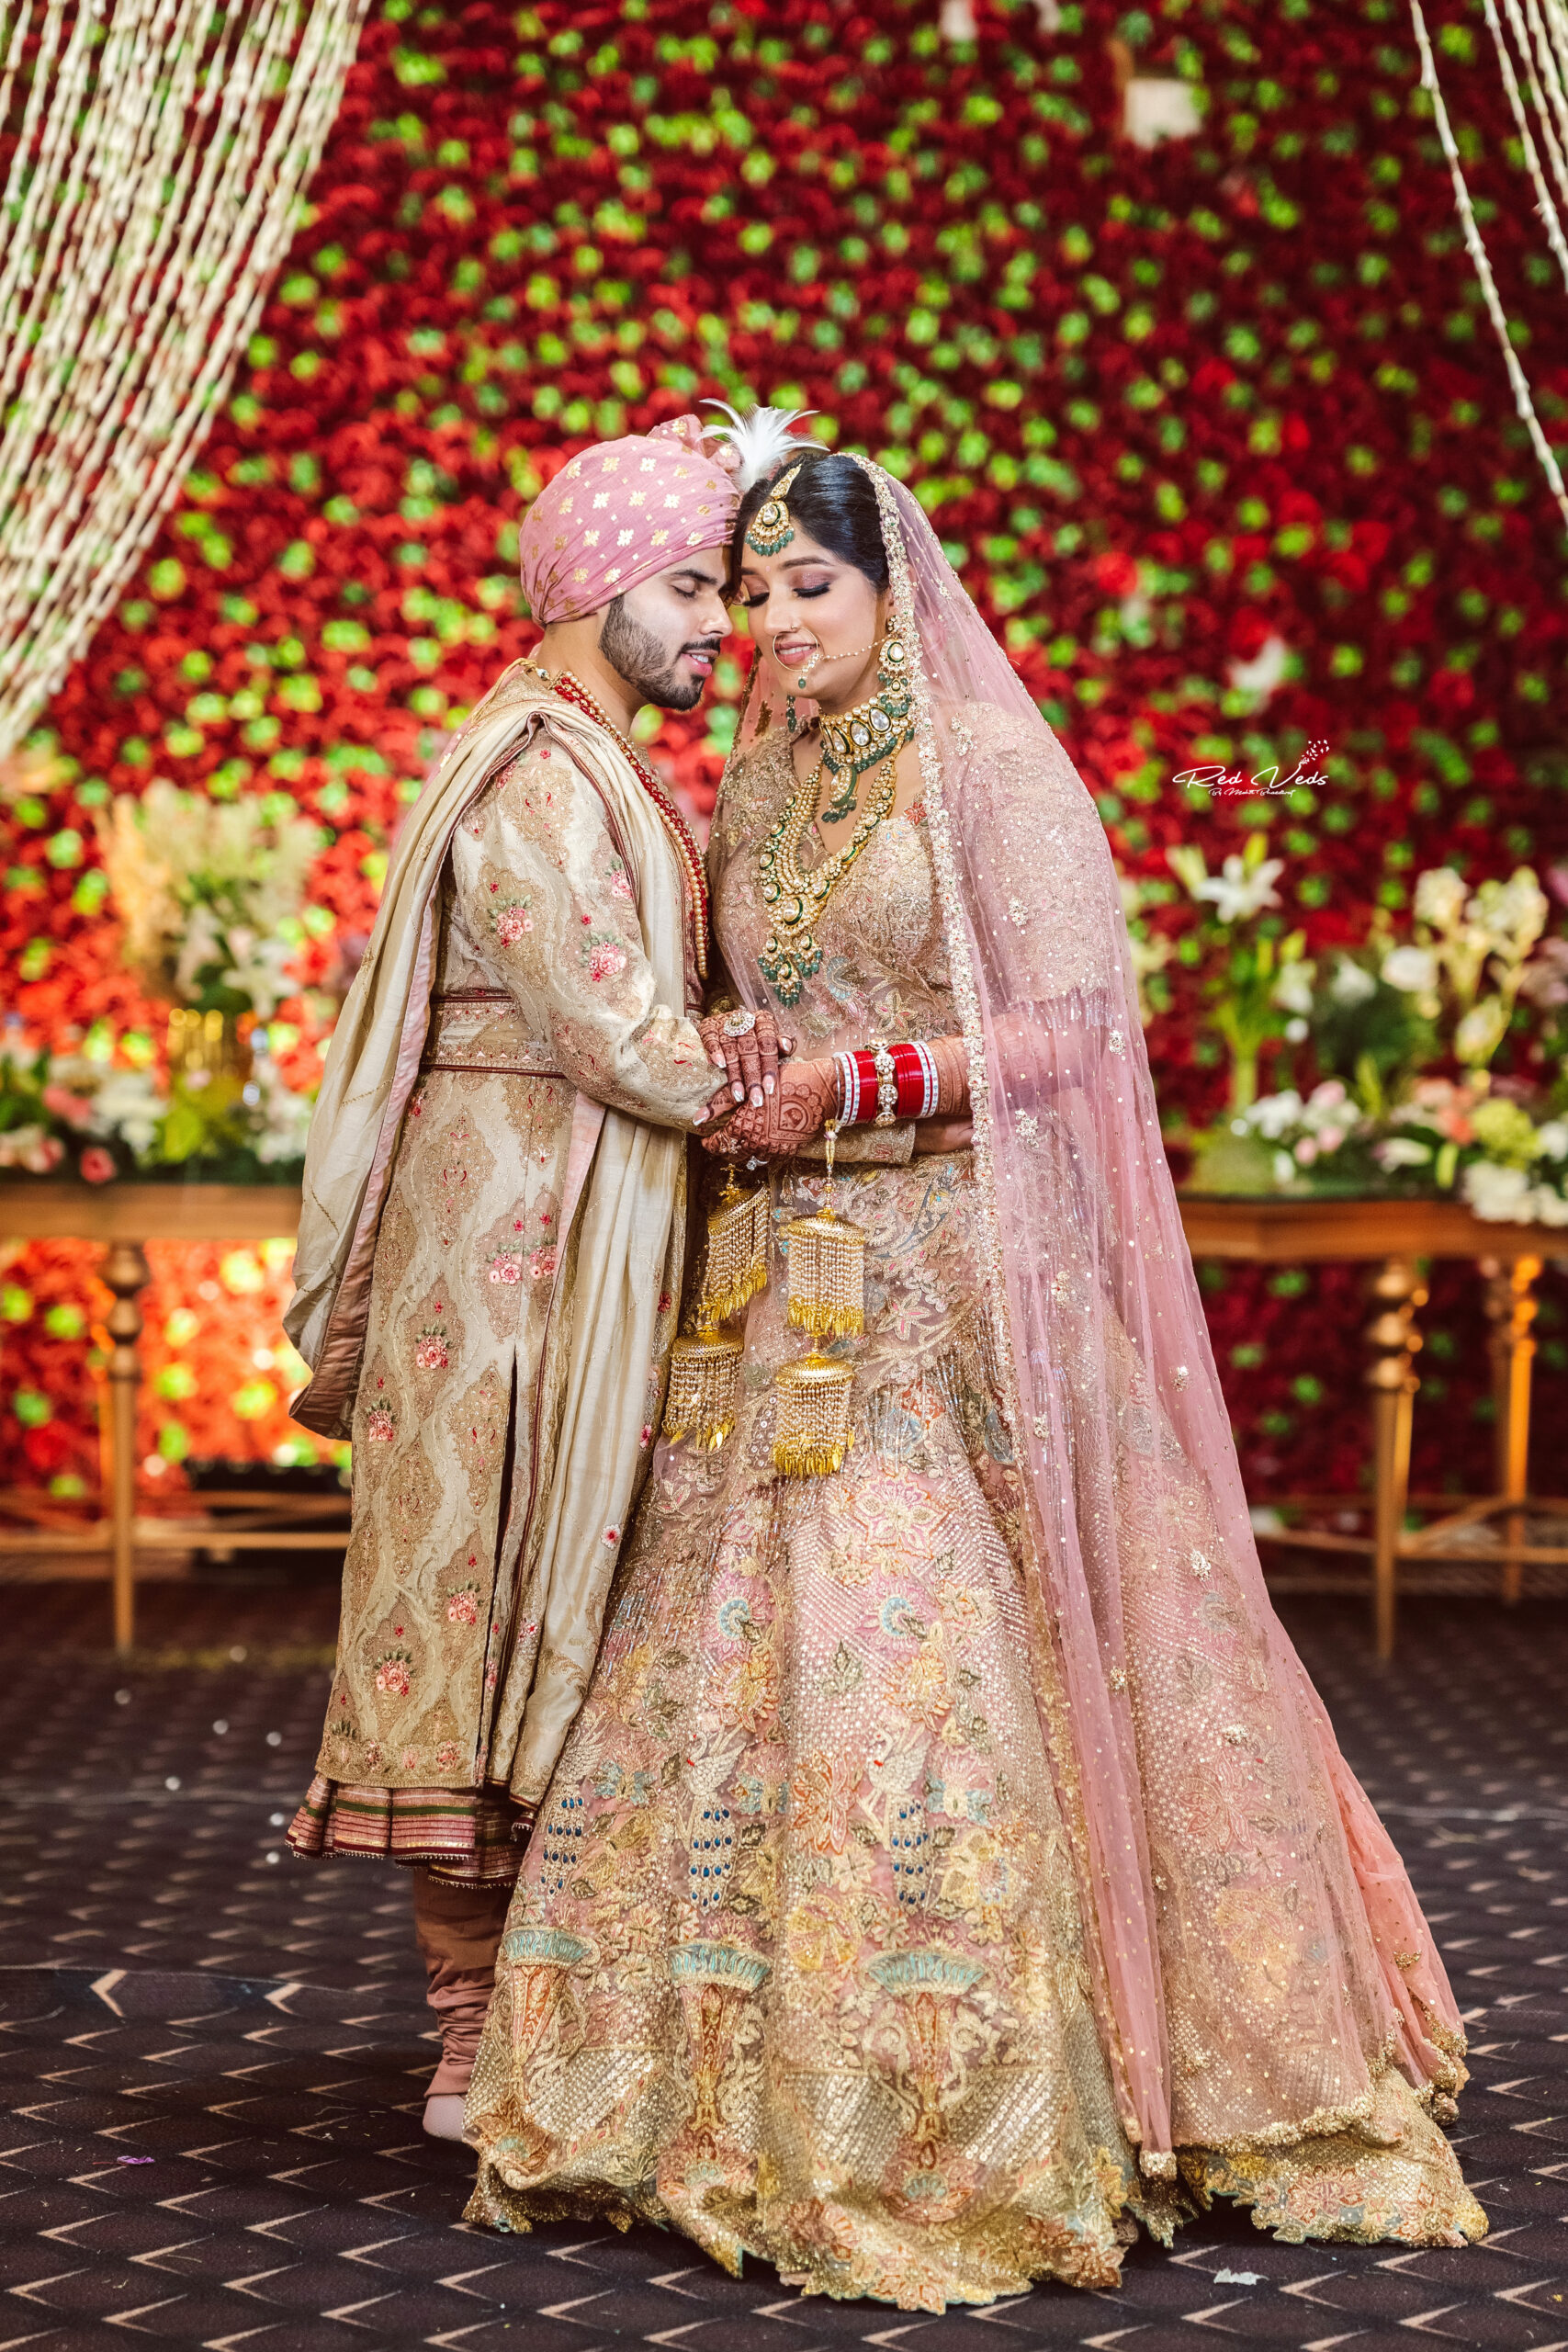 42 Shaadi step photo ideas | indian wedding couple photography, indian  wedding photography poses, indian wedding photography couples